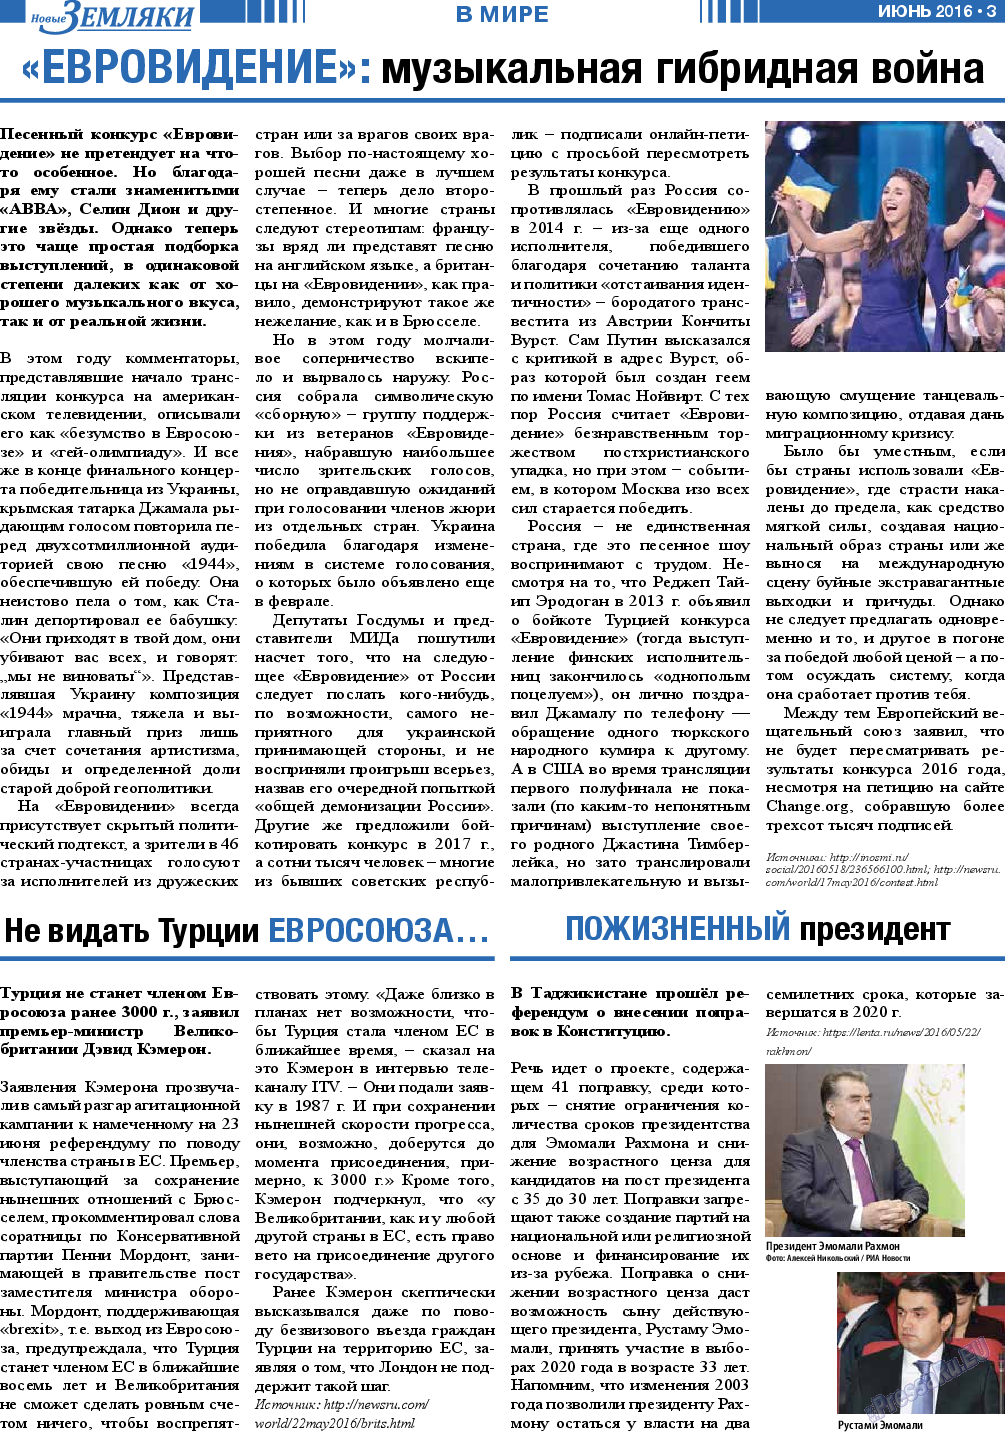 Новые Земляки, газета. 2016 №6 стр.3